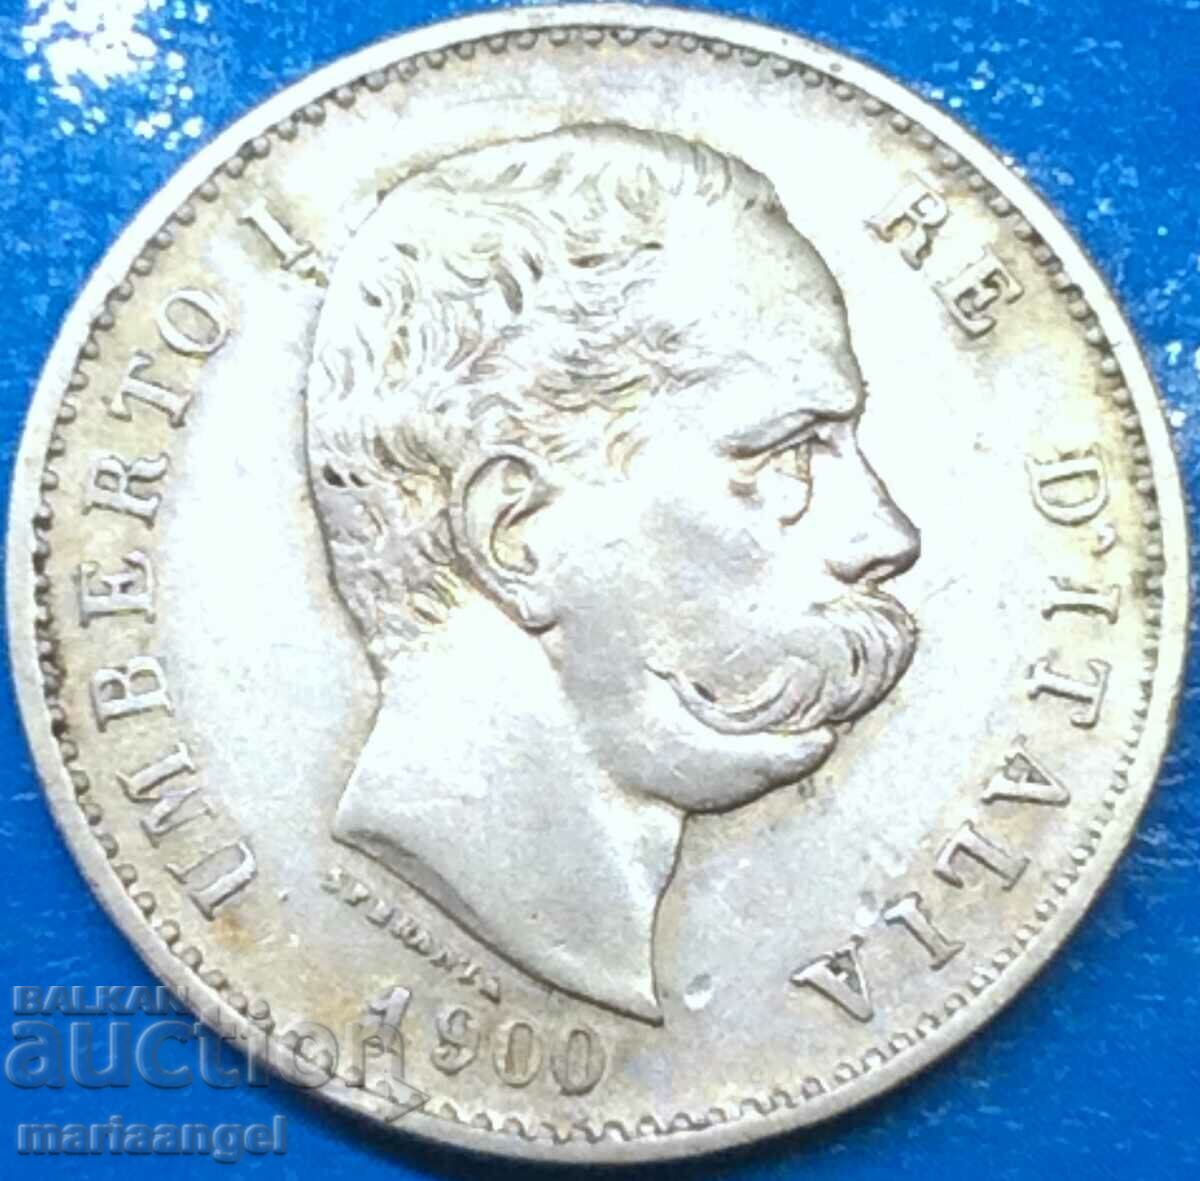 1 Λίρα 1900 Ιταλία Umberto I - αρκετά σπάνιο έτος